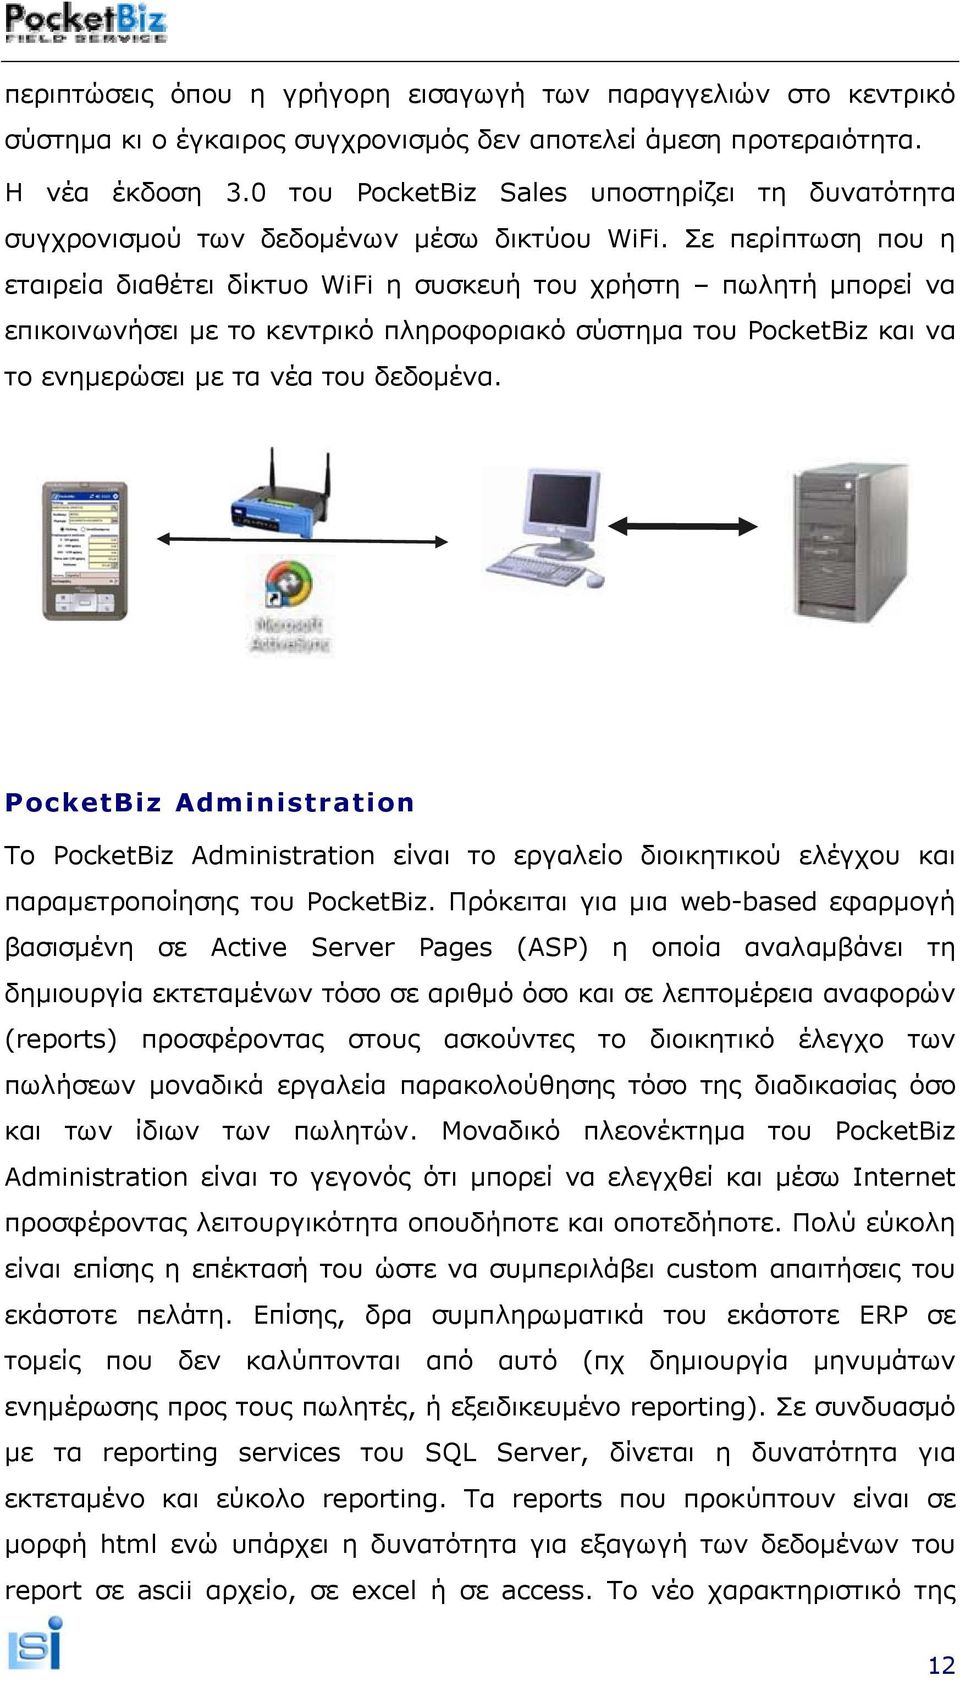 Σε περίπτωση που η εταιρεία διαθέτει δίκτυο WiFi η συσκευή του χρήστη πωλητή μπορεί να επικοινωνήσει με το κεντρικό πληροφοριακό σύστημα του PocketBiz και να το ενημερώσει με τα νέα του δεδομένα.